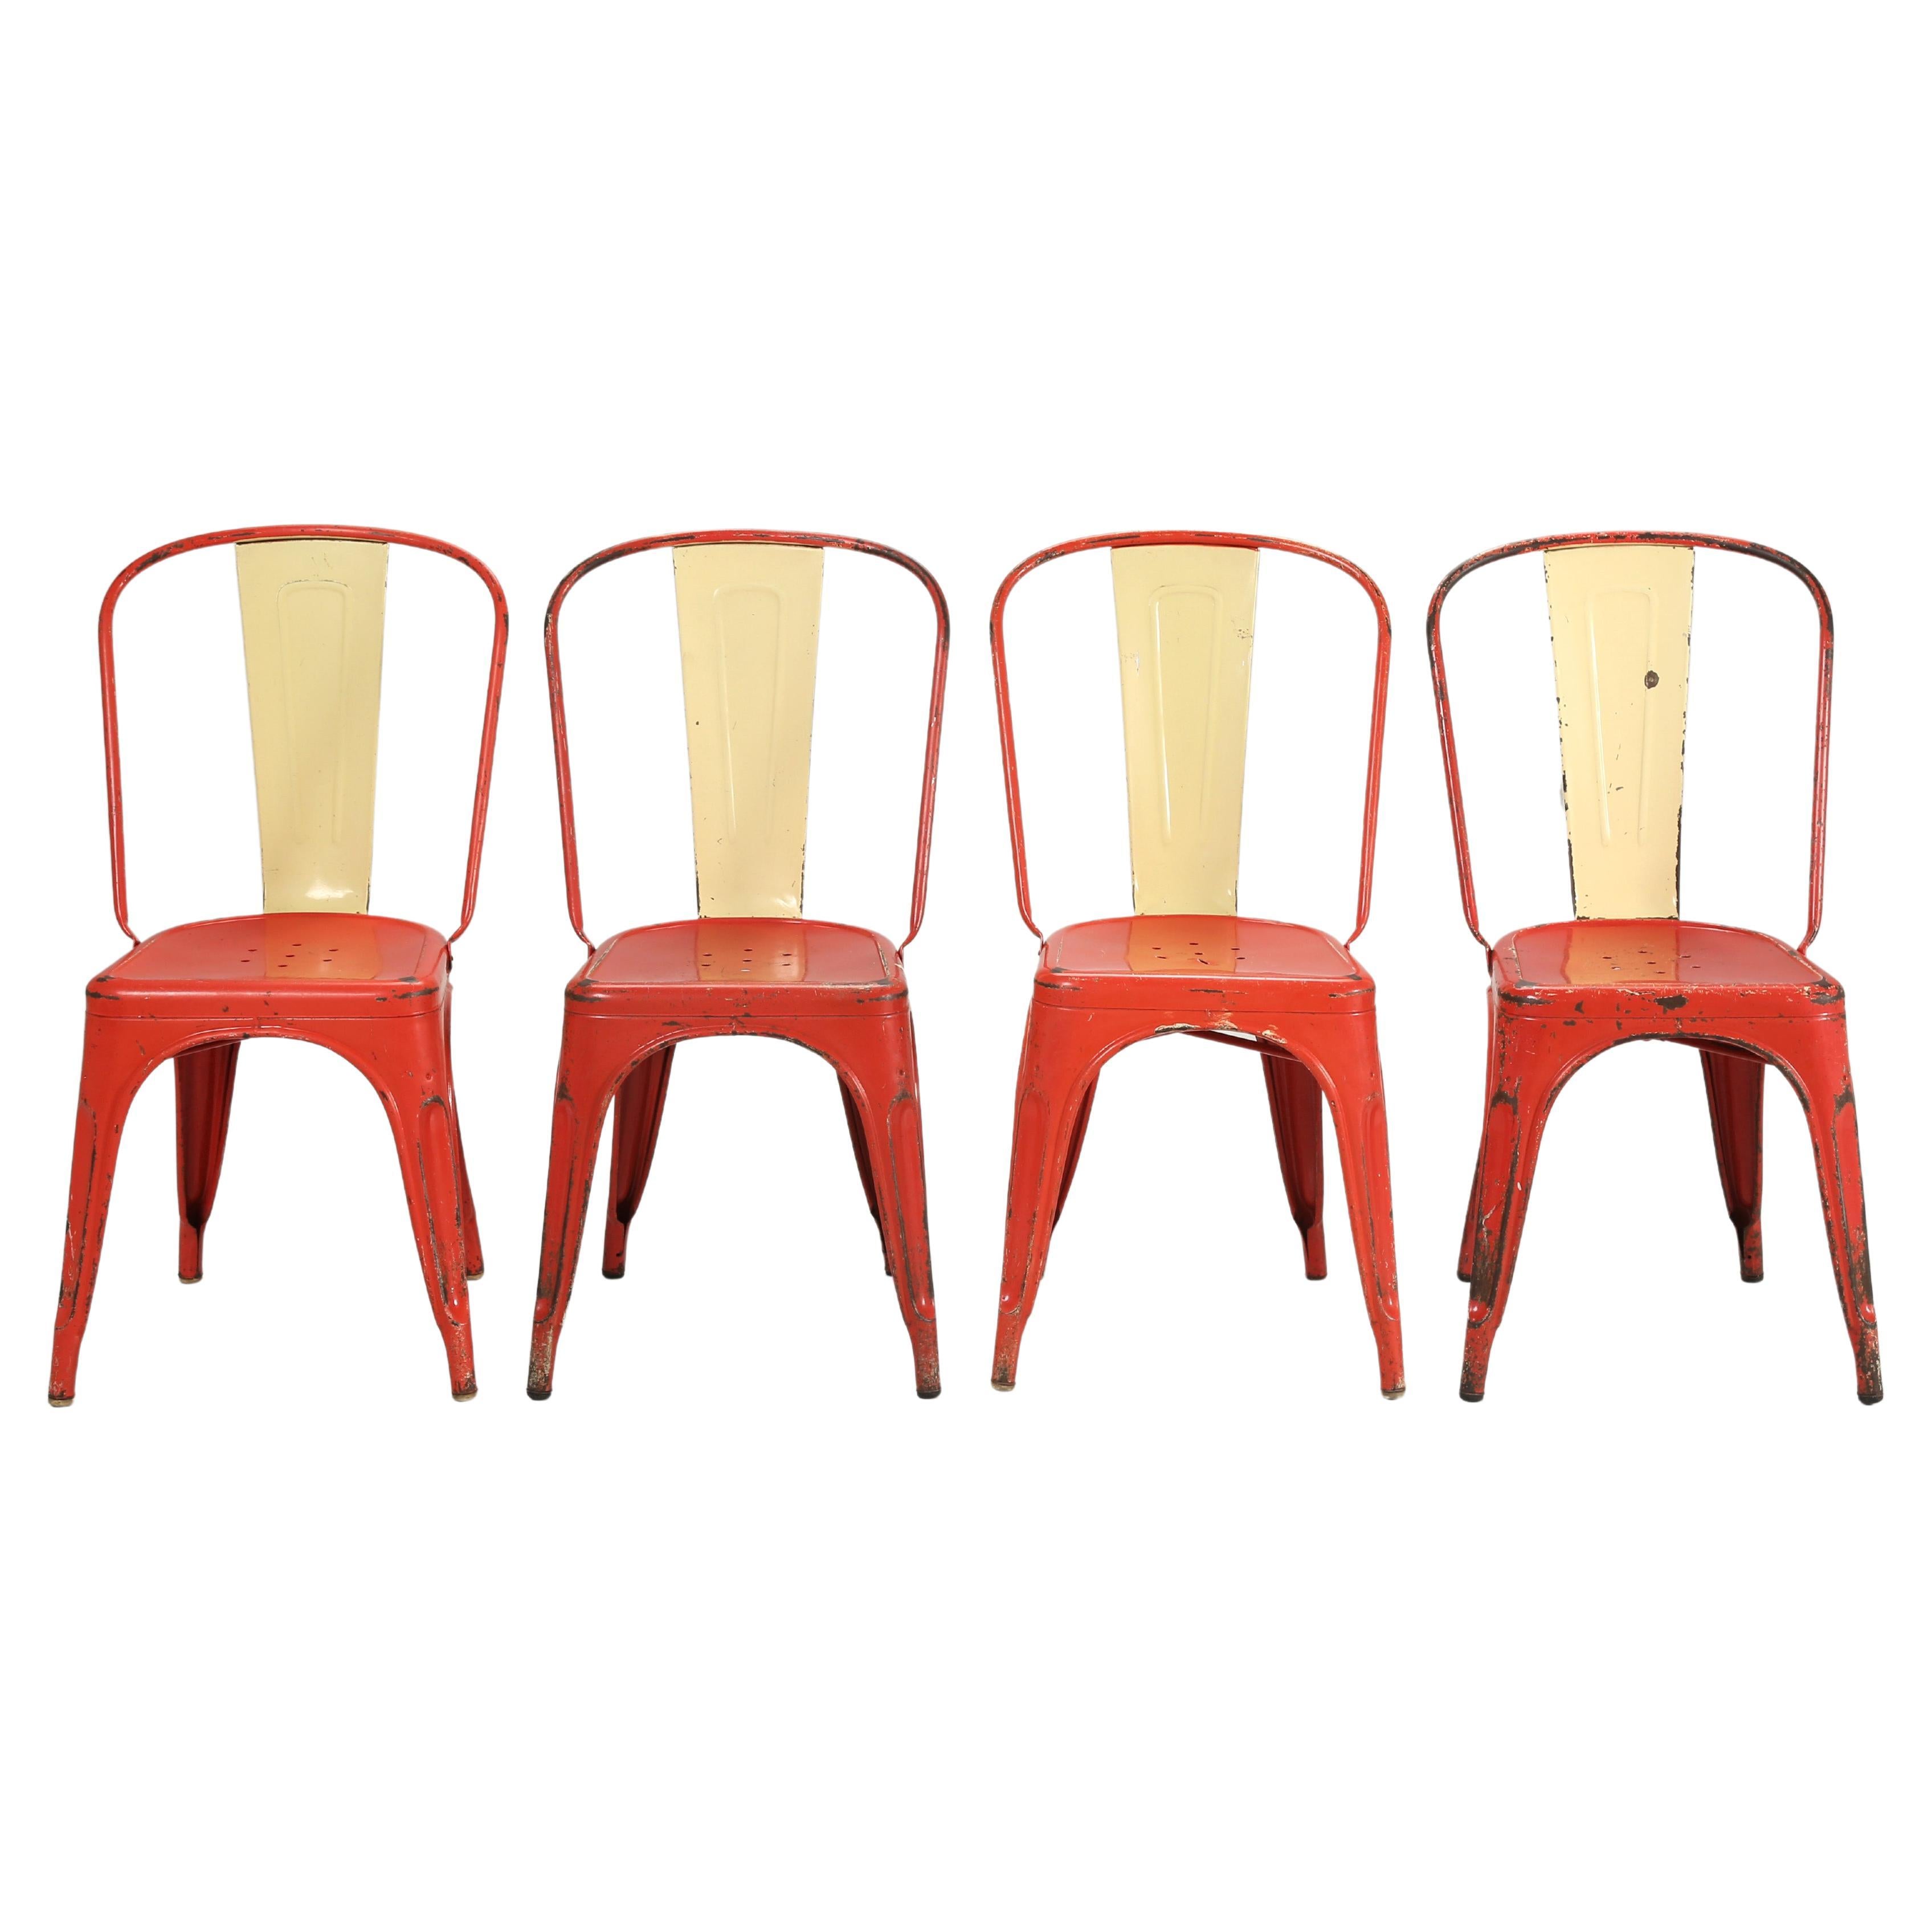 Vintage Authentic Original Paint Tolix Chairs c1950's Large Quantity Available